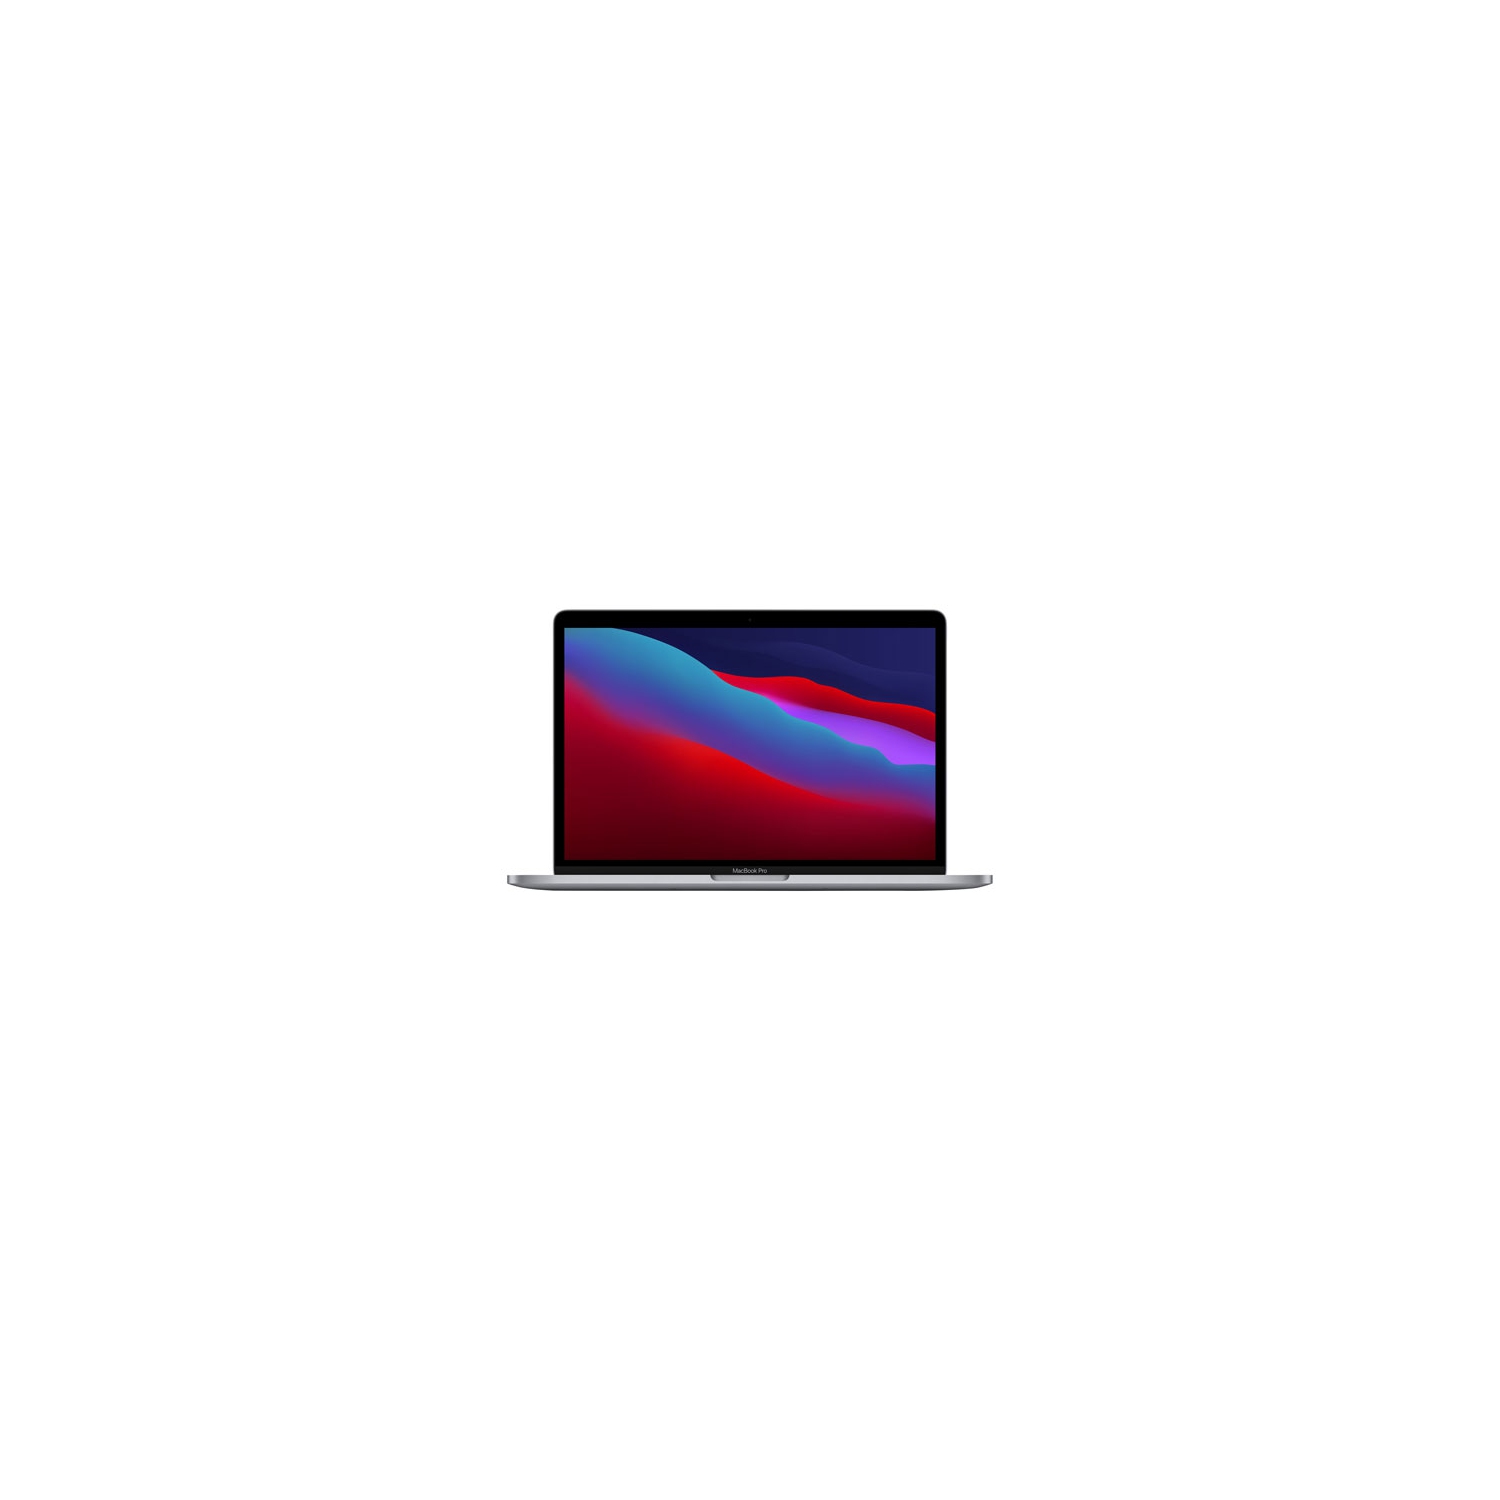 Apple MacBook Pro 13.3" w/ Touch Bar (Fall 2020) - Space Grey (Apple M1 Chip / 512GB SSD / 8GB RAM) - En - Open Box